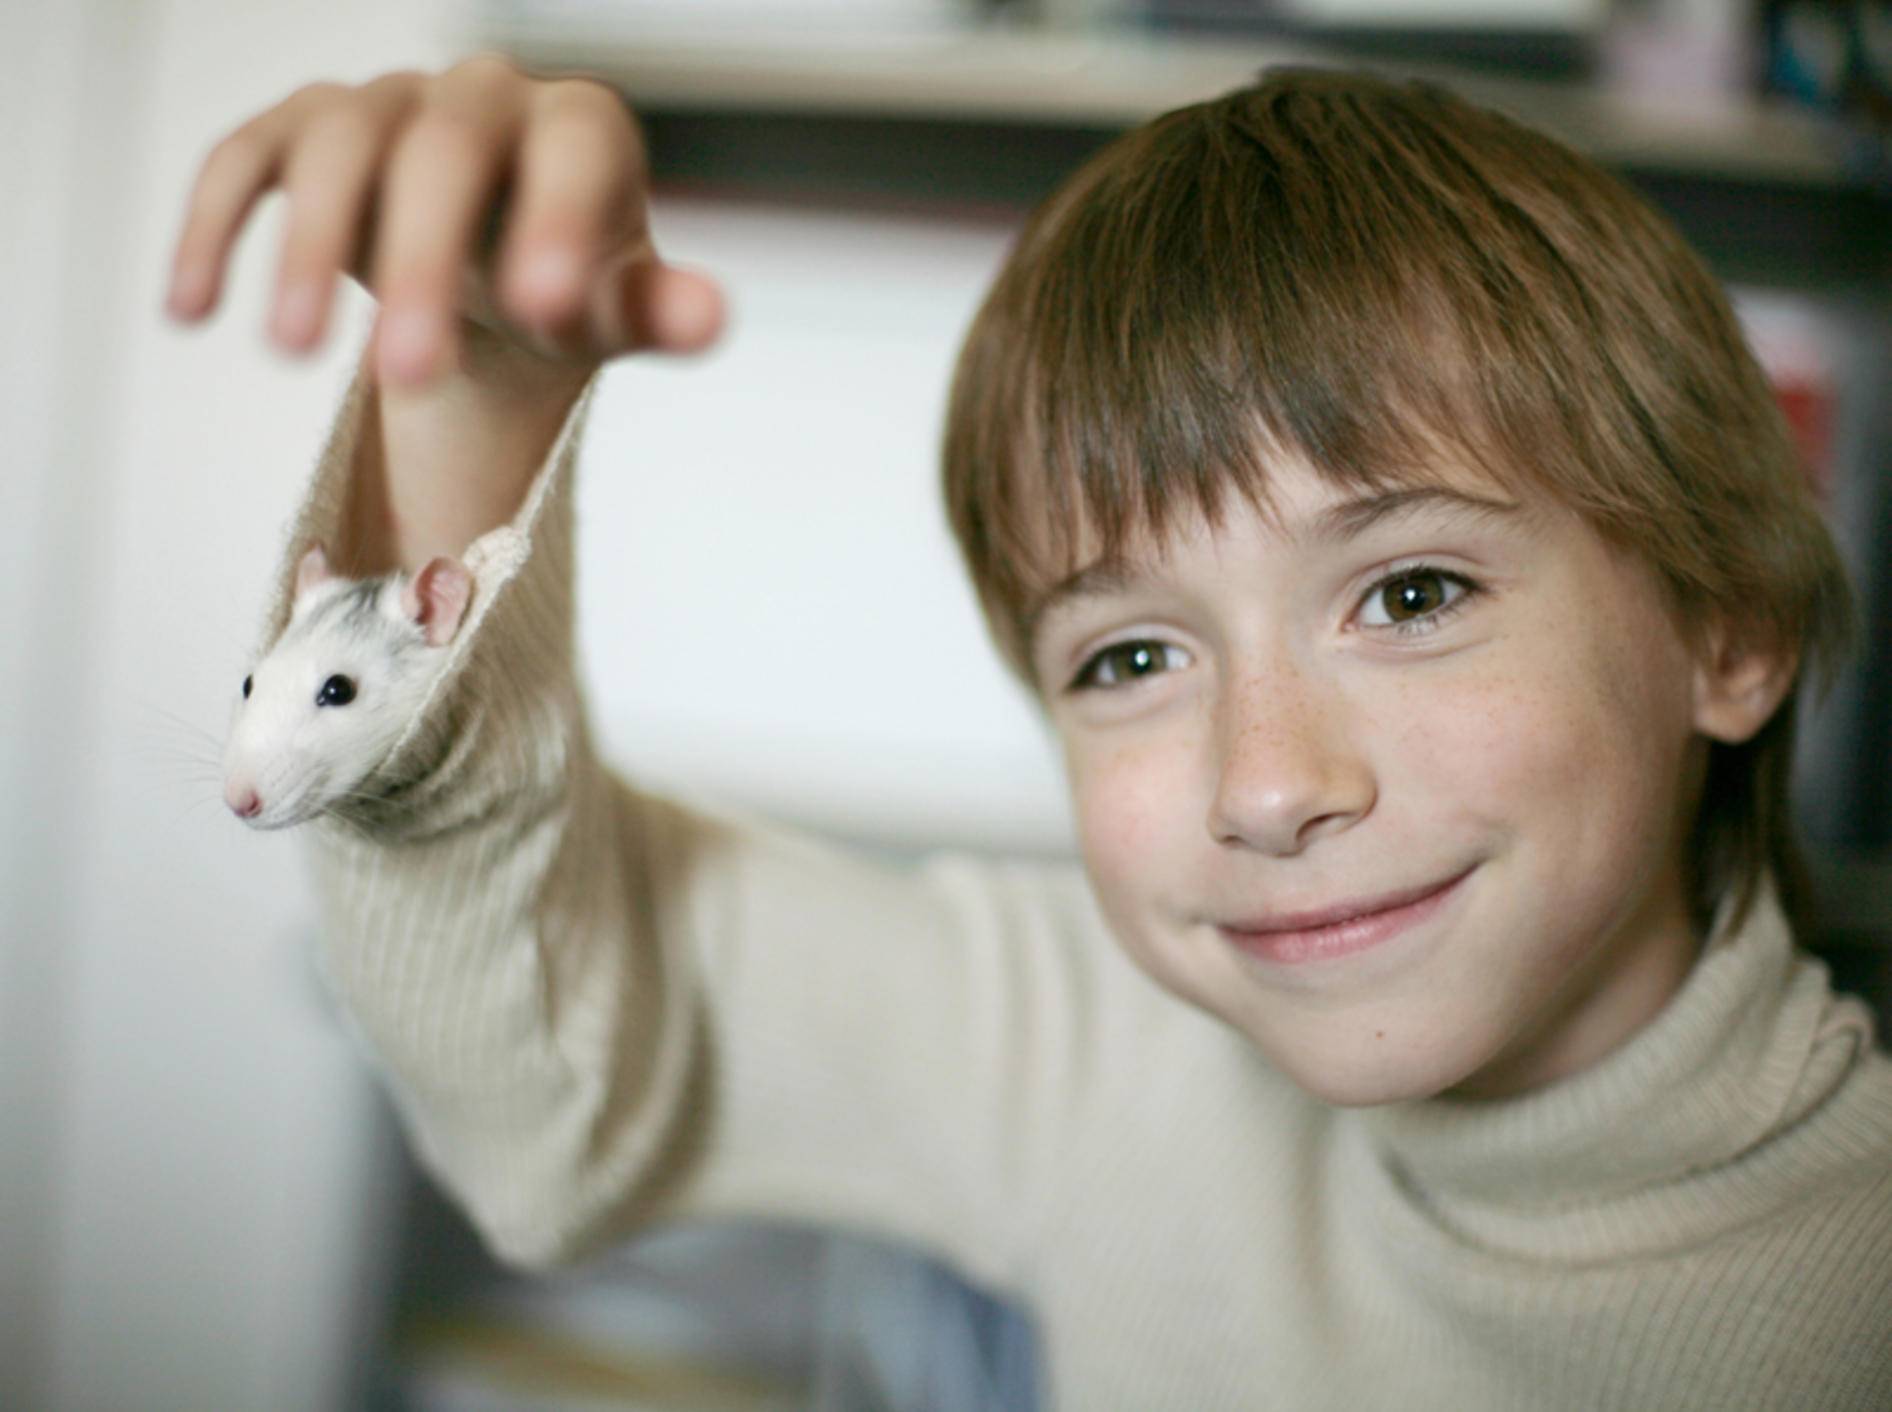 Kuckuck, wer schaut denn da aus dem Ärmel? Da scheint sich die süße Ratte wohlzufühlen! Shutterstock / Anna Jurkovska